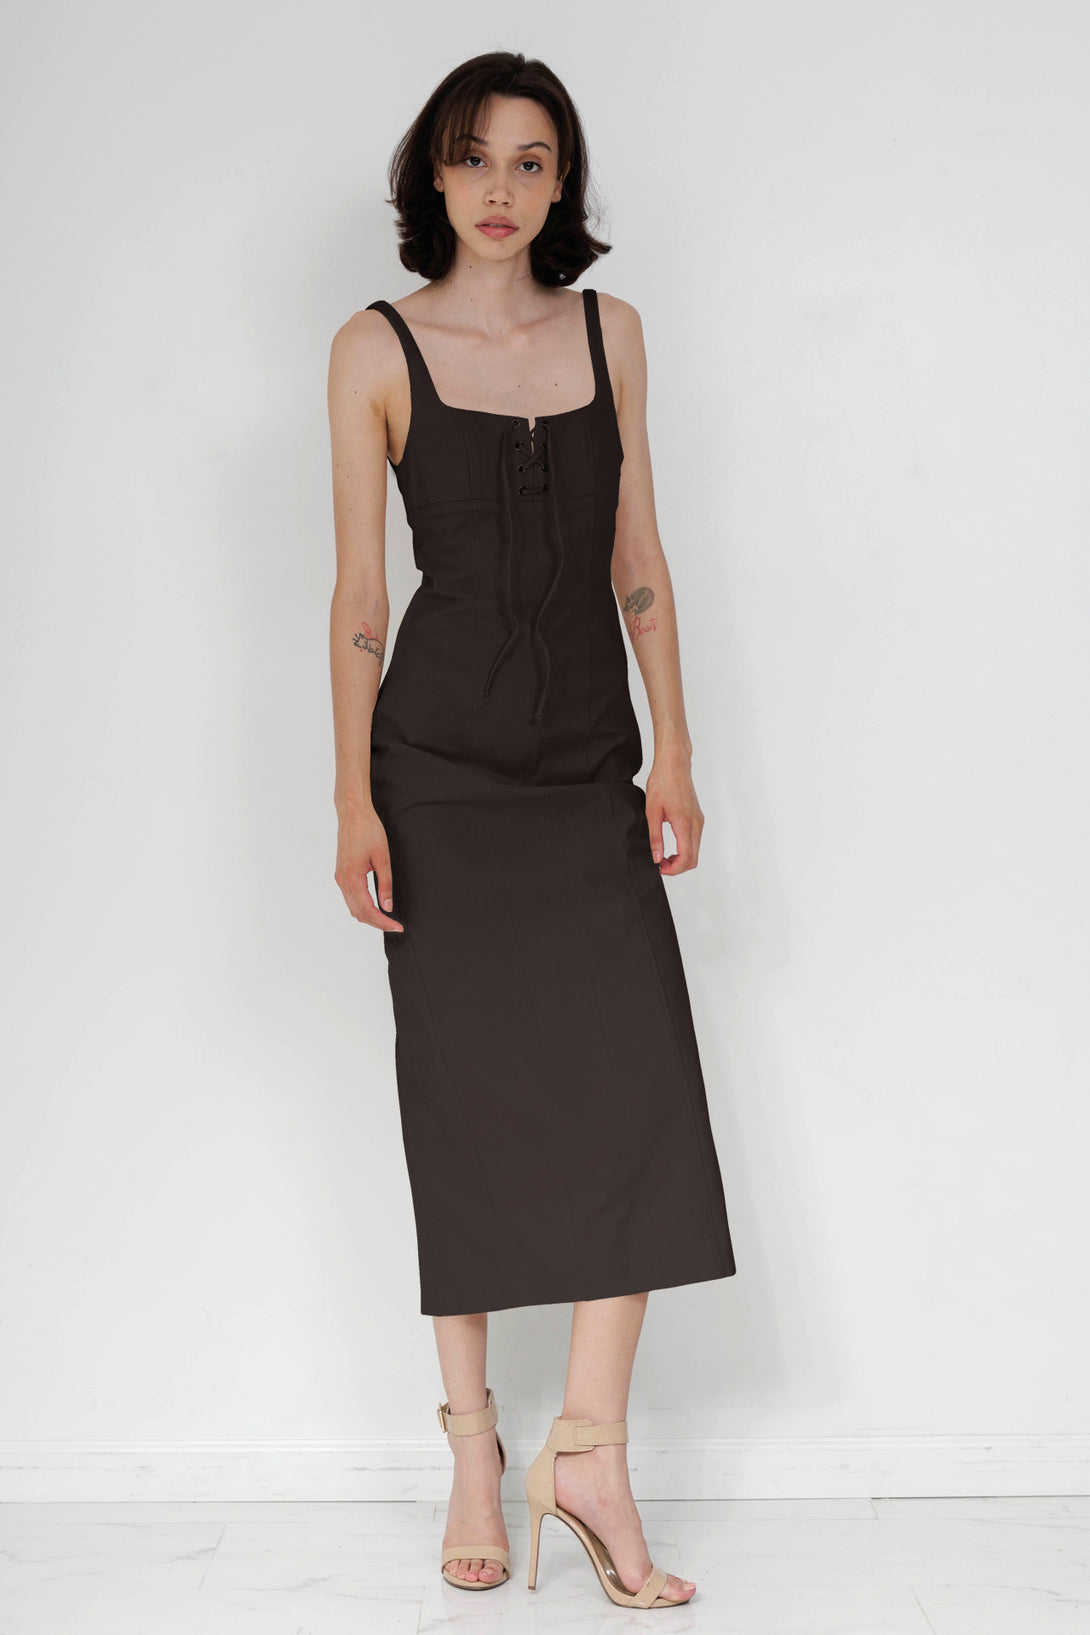 midi dress for women, HT 360 Collective, summer midi dress, formal lace up dress, womens brown midi dress,